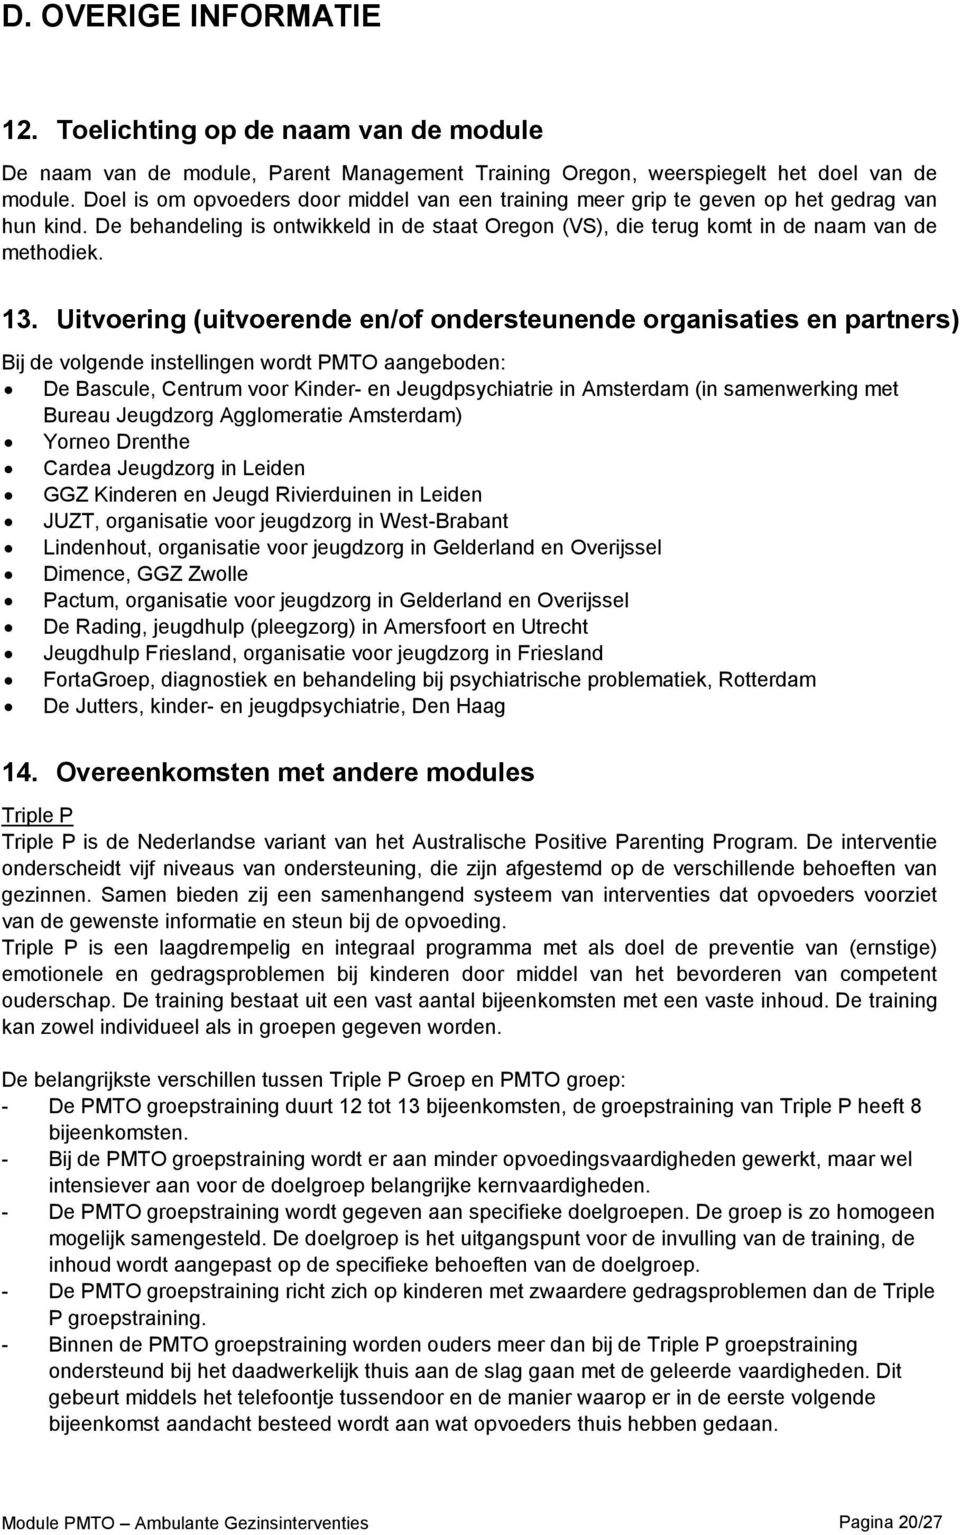 Uitvoering (uitvoerende en/of ondersteunende organisaties en partners) Bij de volgende instellingen wordt PMTO aangeboden: De Bascule, Centrum voor Kinder- en Jeugdpsychiatrie in Amsterdam (in